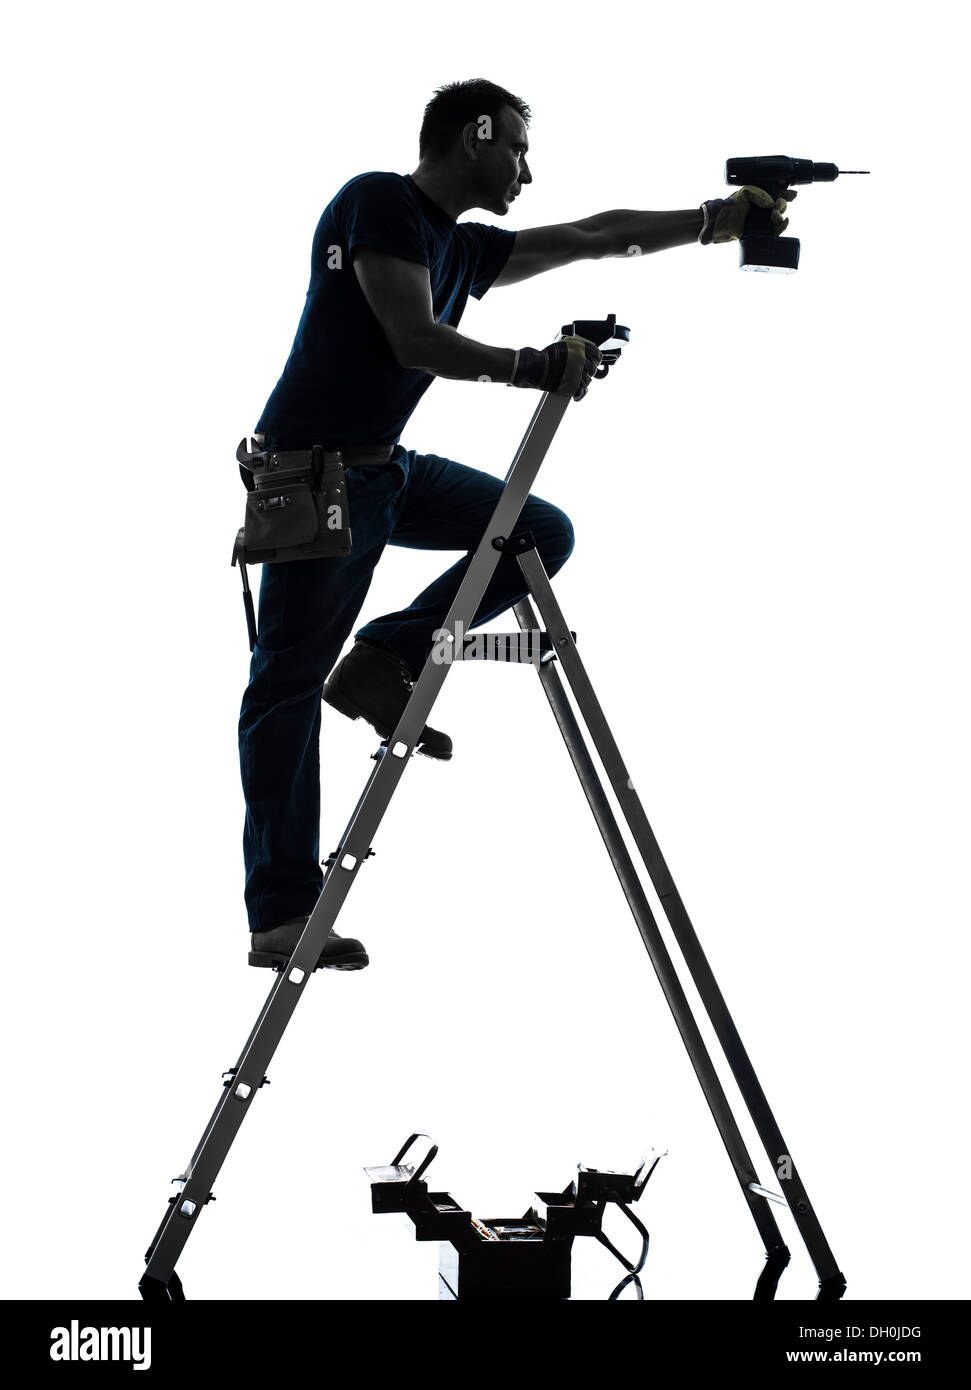 ein Arbeiter-Mann auf Leiter Bohren in Silhouette auf weißem Hintergrund  Stockfotografie - Alamy